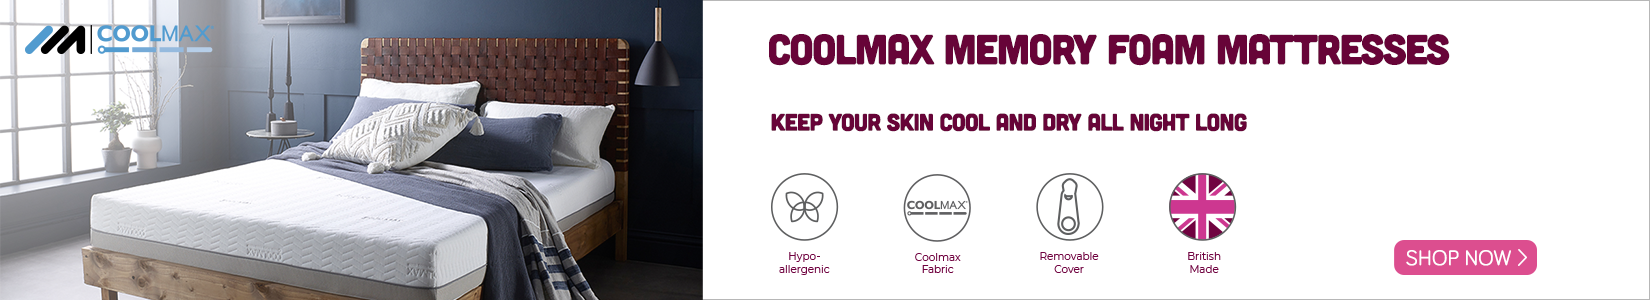 Coolmax mattress banner